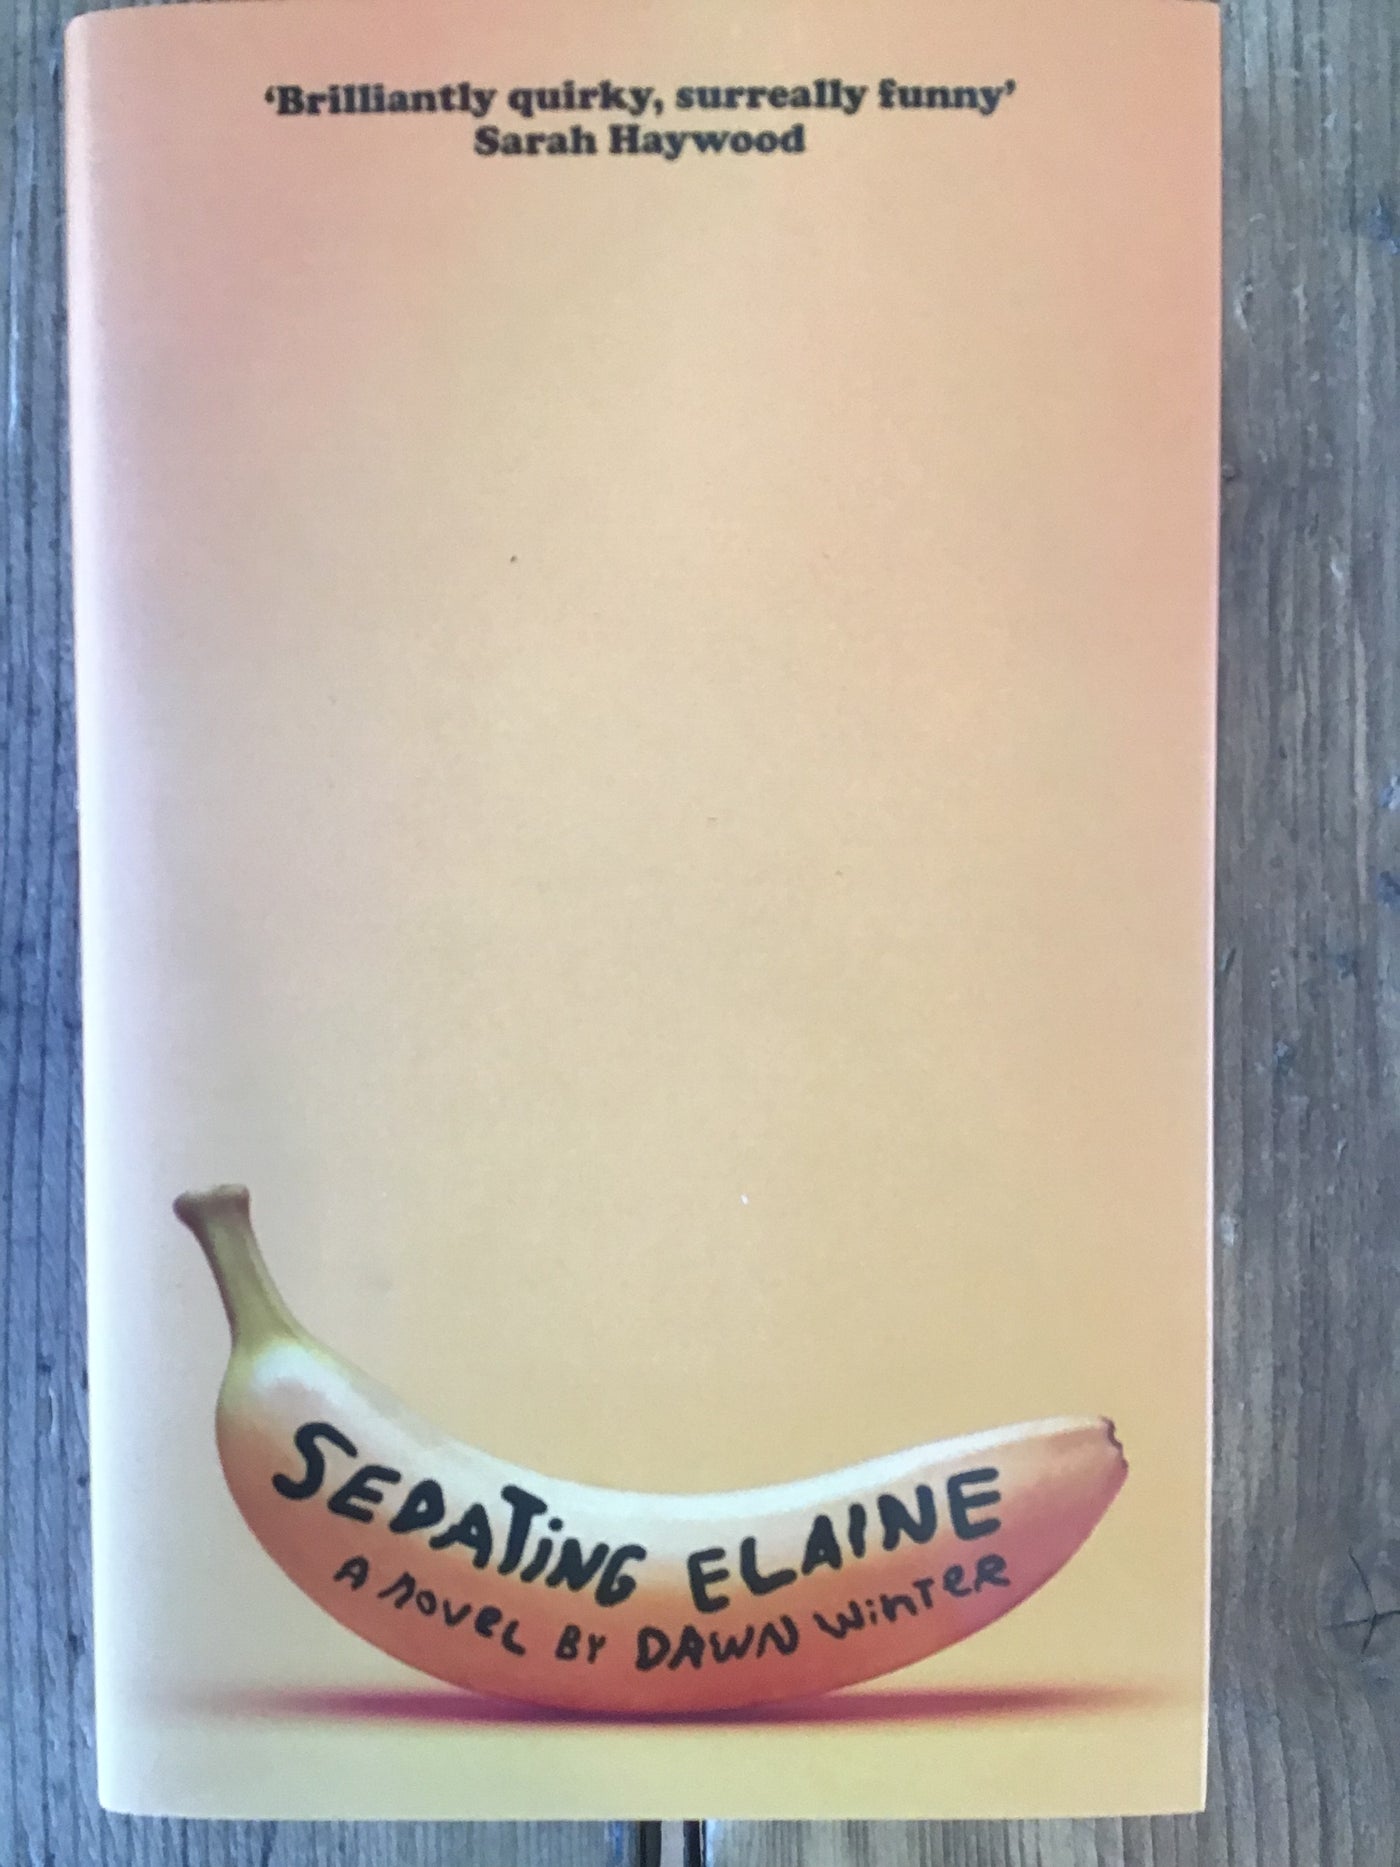 Sedating Elaine - SALE